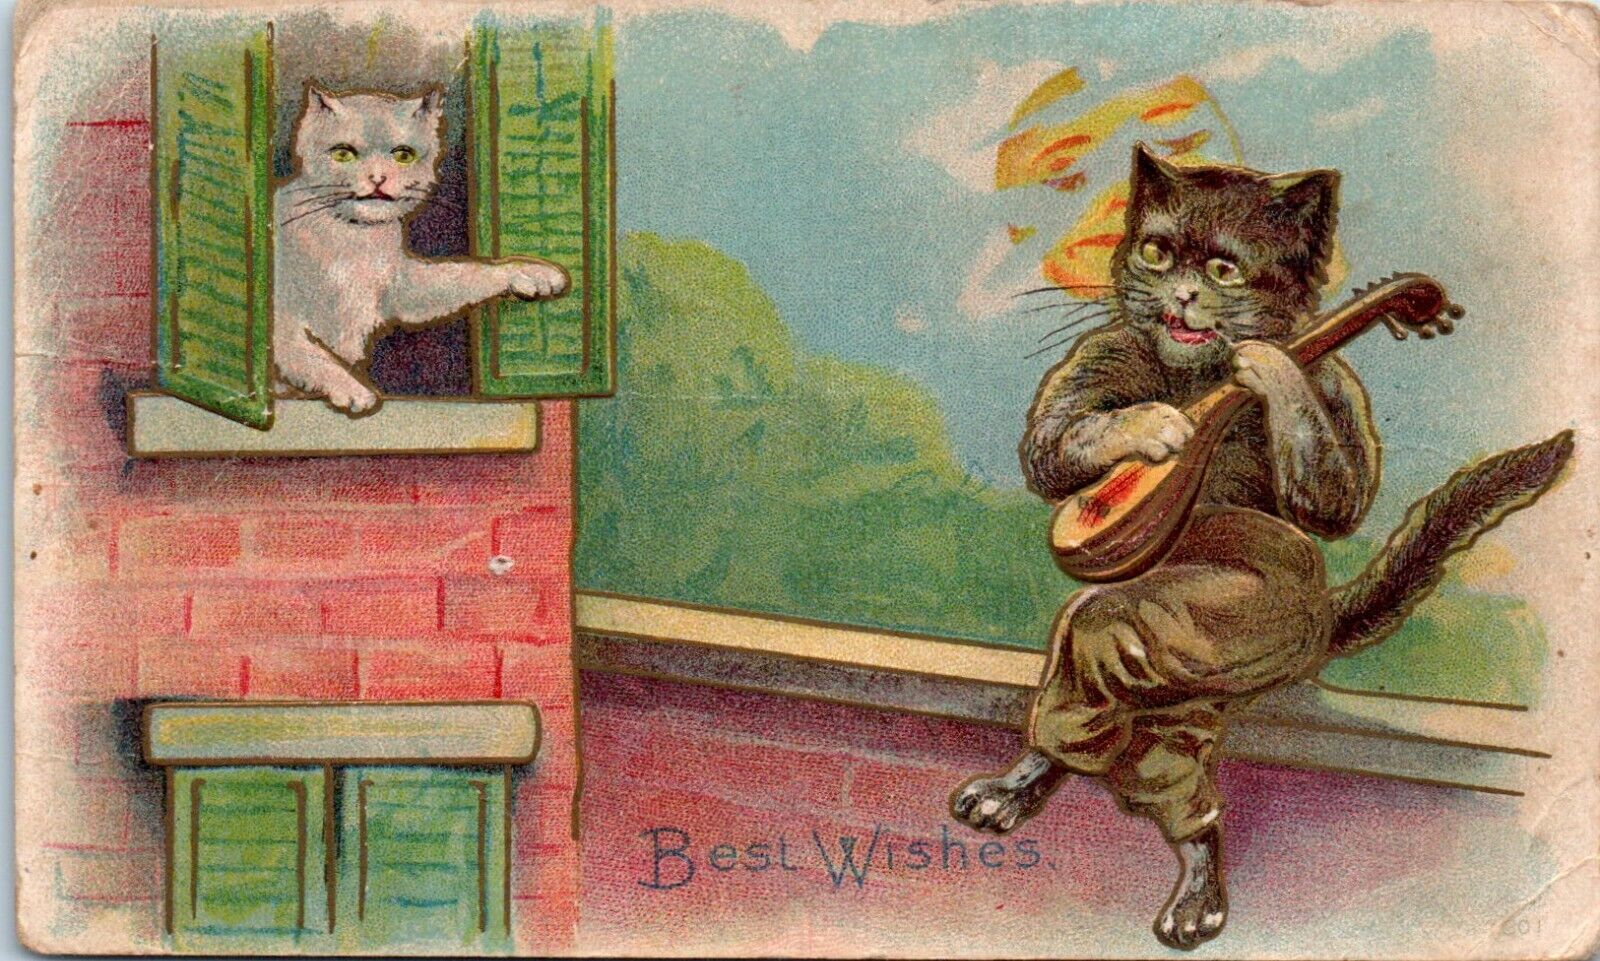 1910 Best Wishes Serenade Cats Dressed Mainzer Anthropomorphic Postcard